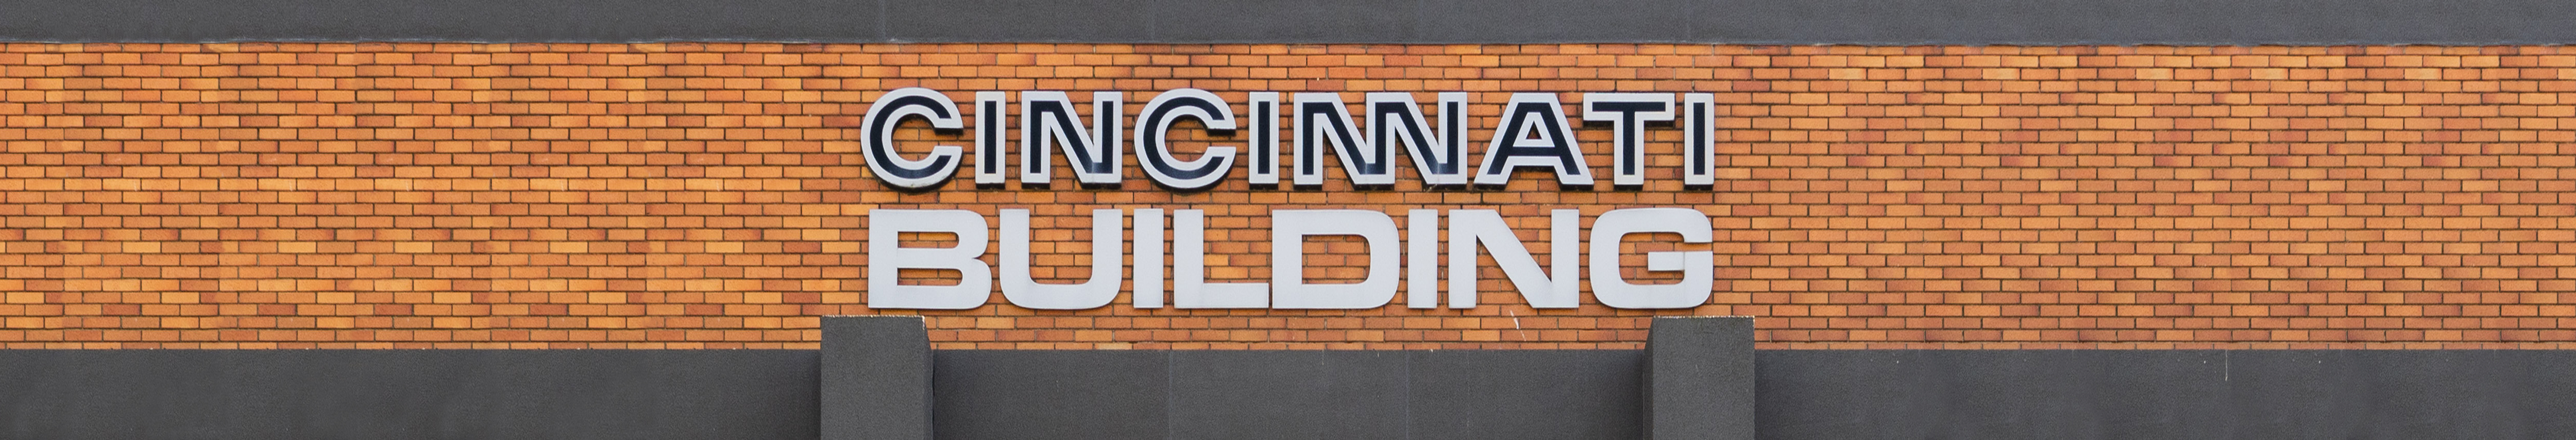 Cincinnati Building